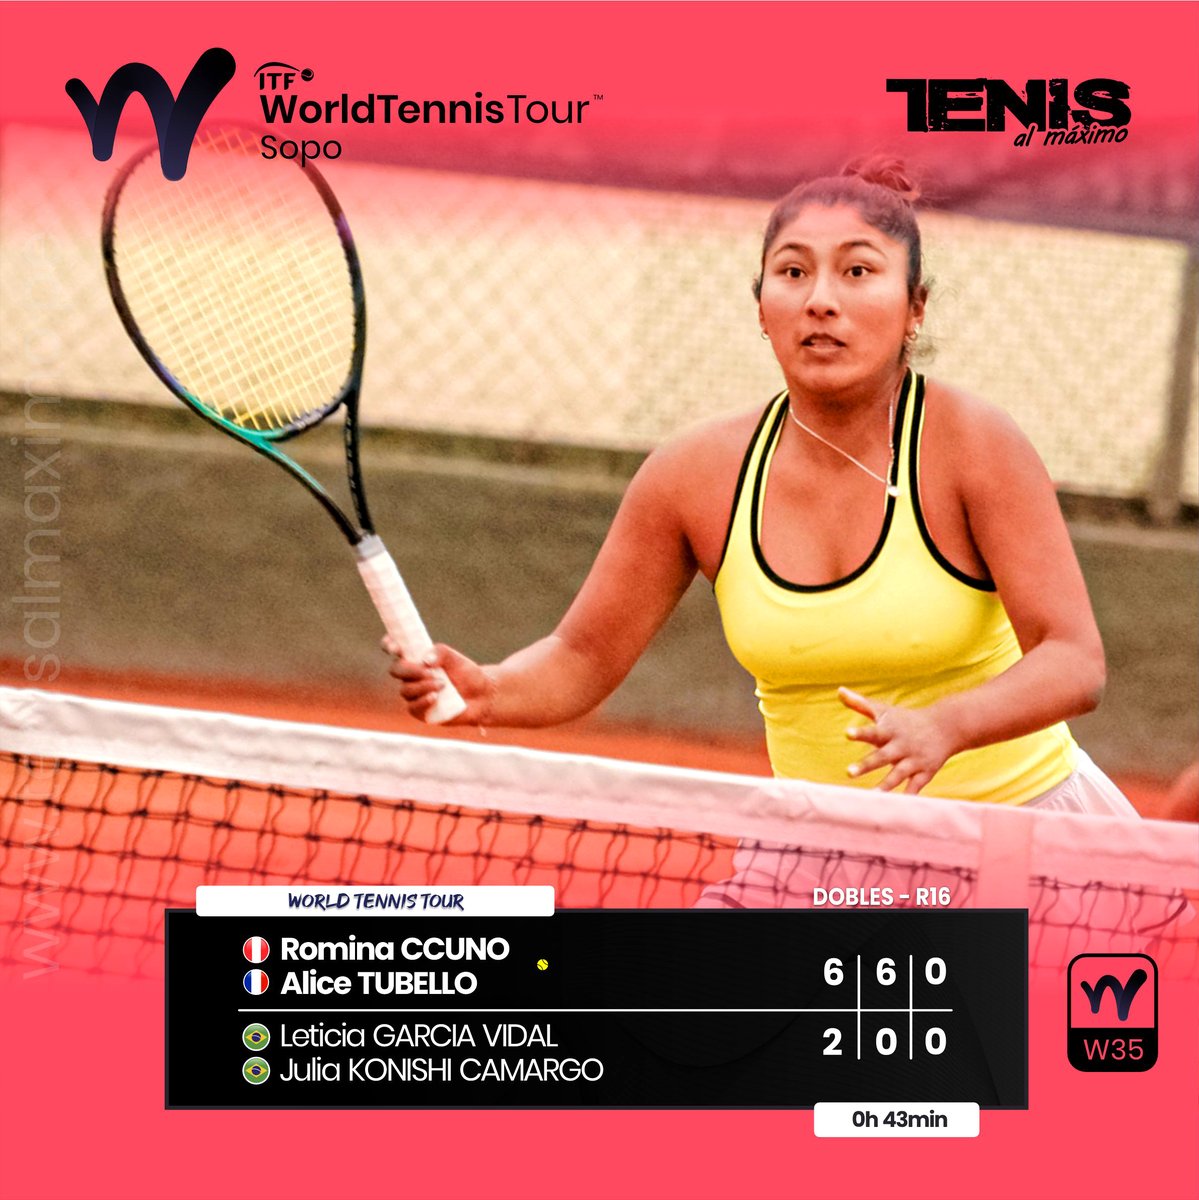 #ITFPro |  En el inicio de su participación en duplas, la arequipeña Romina Ccuno logró el acceso a los cuartos de final en el ITF World Tennis Tour W35 de Sopo, evento que se juega sobre arcilla en las instalaciones del Club Hato Grande, Cundinamarca, Colombia.